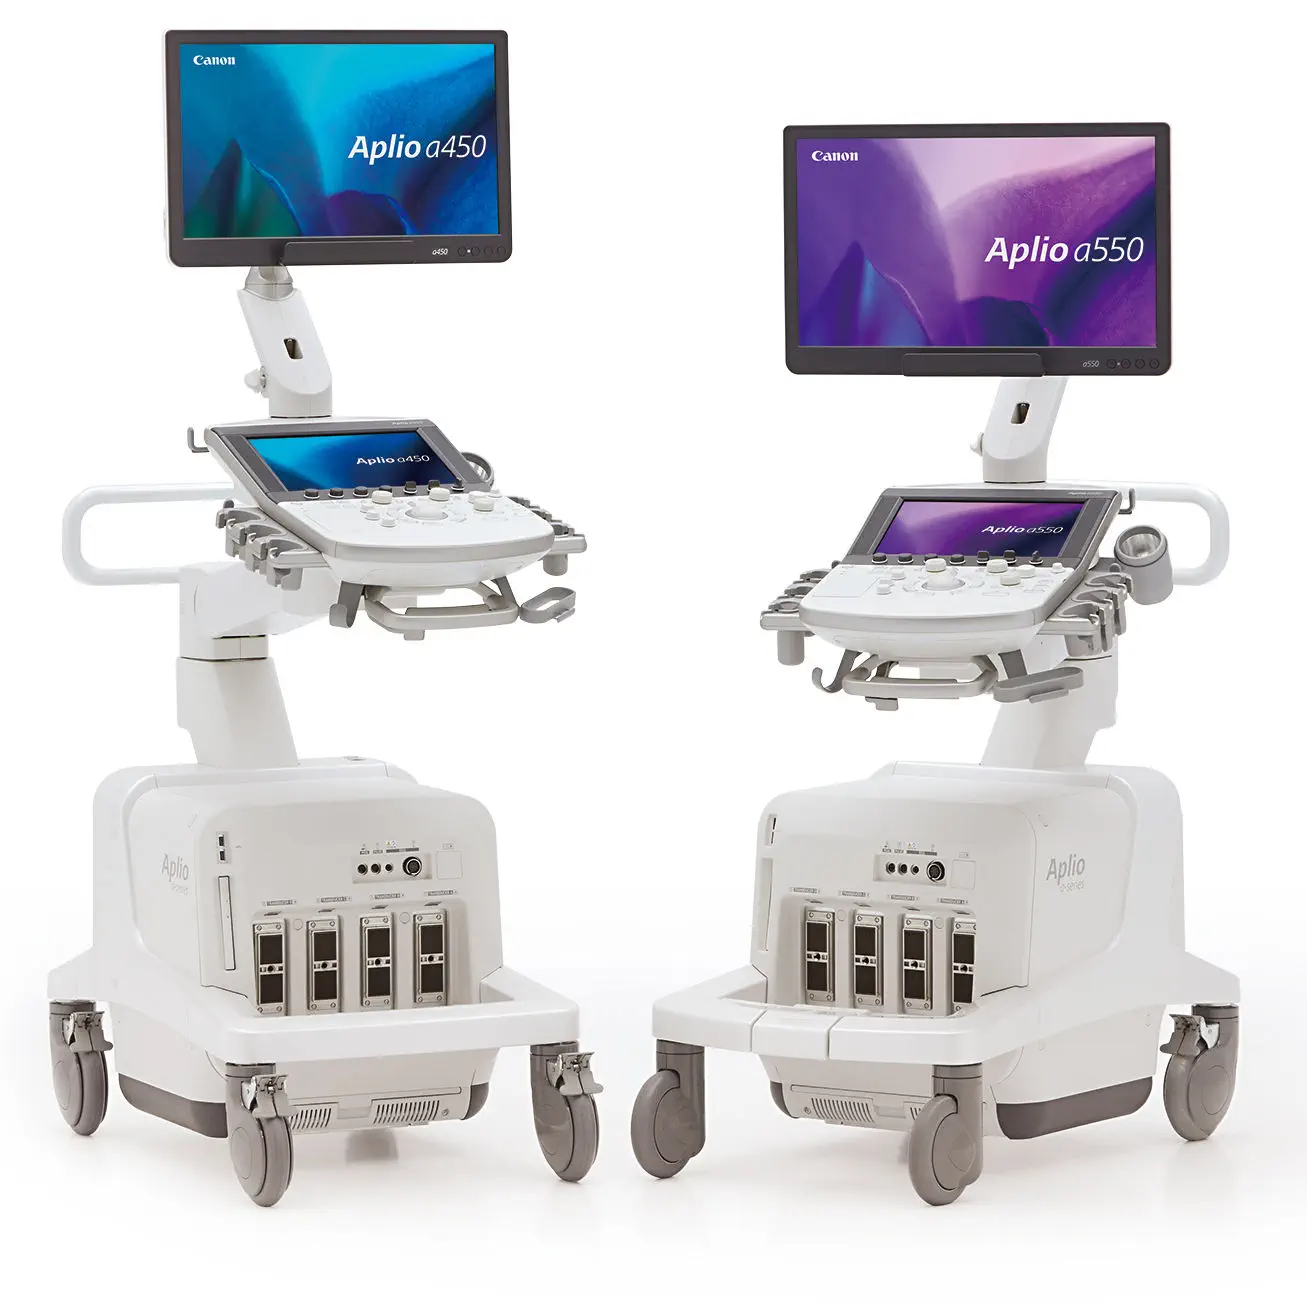 เครื่องตรวจอวัยวะภายในด้วยคลื่นเสียงความคมชัดสูง  On-platform ultrasound system Aplio a series  Canon